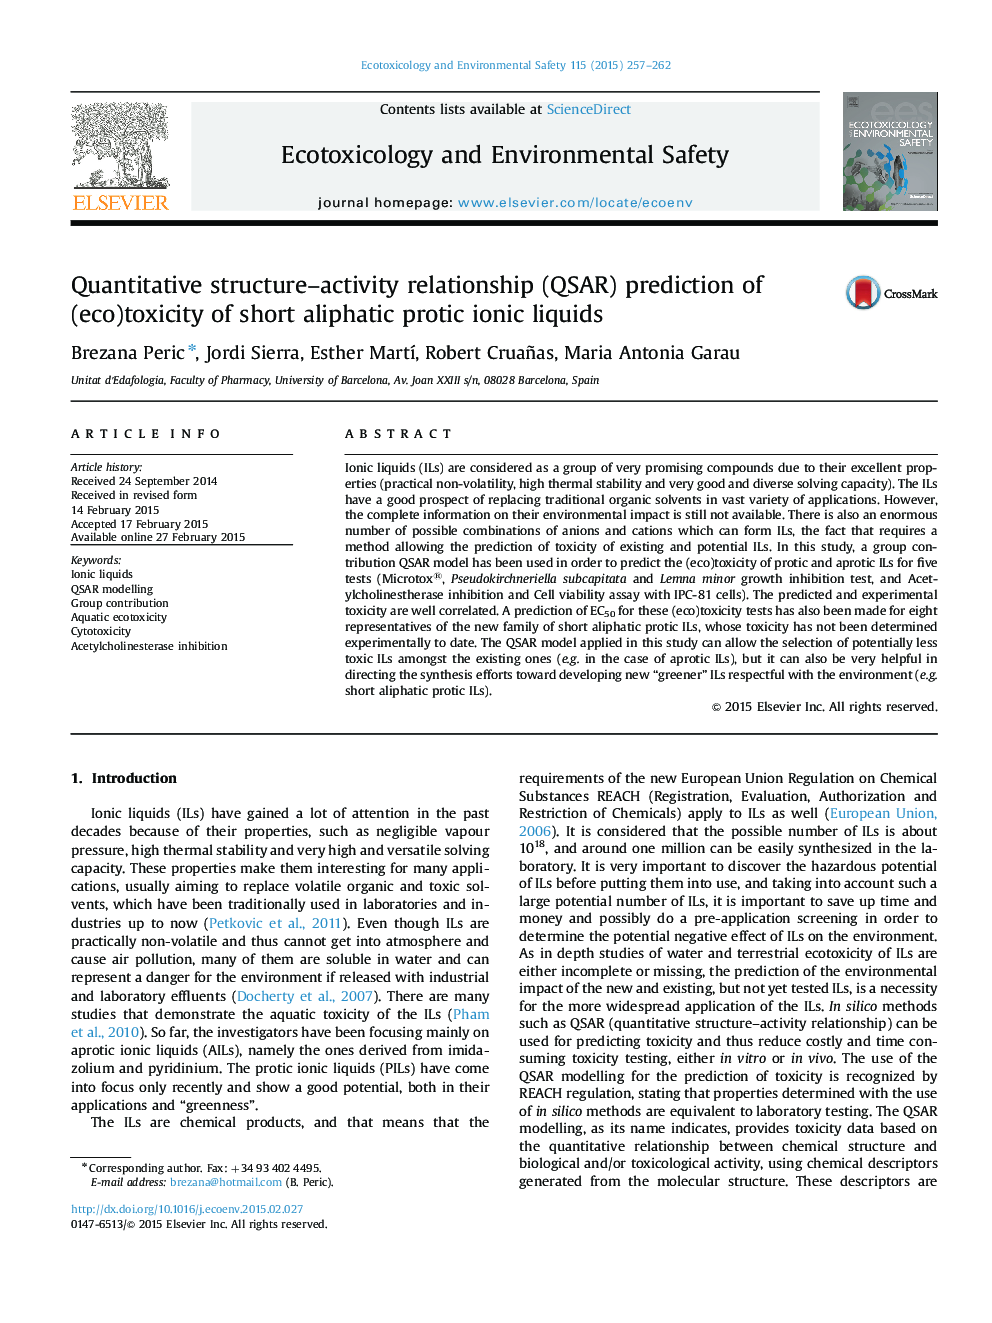 Quantitative structure–activity relationship (QSAR) prediction of (eco)toxicity of short aliphatic protic ionic liquids